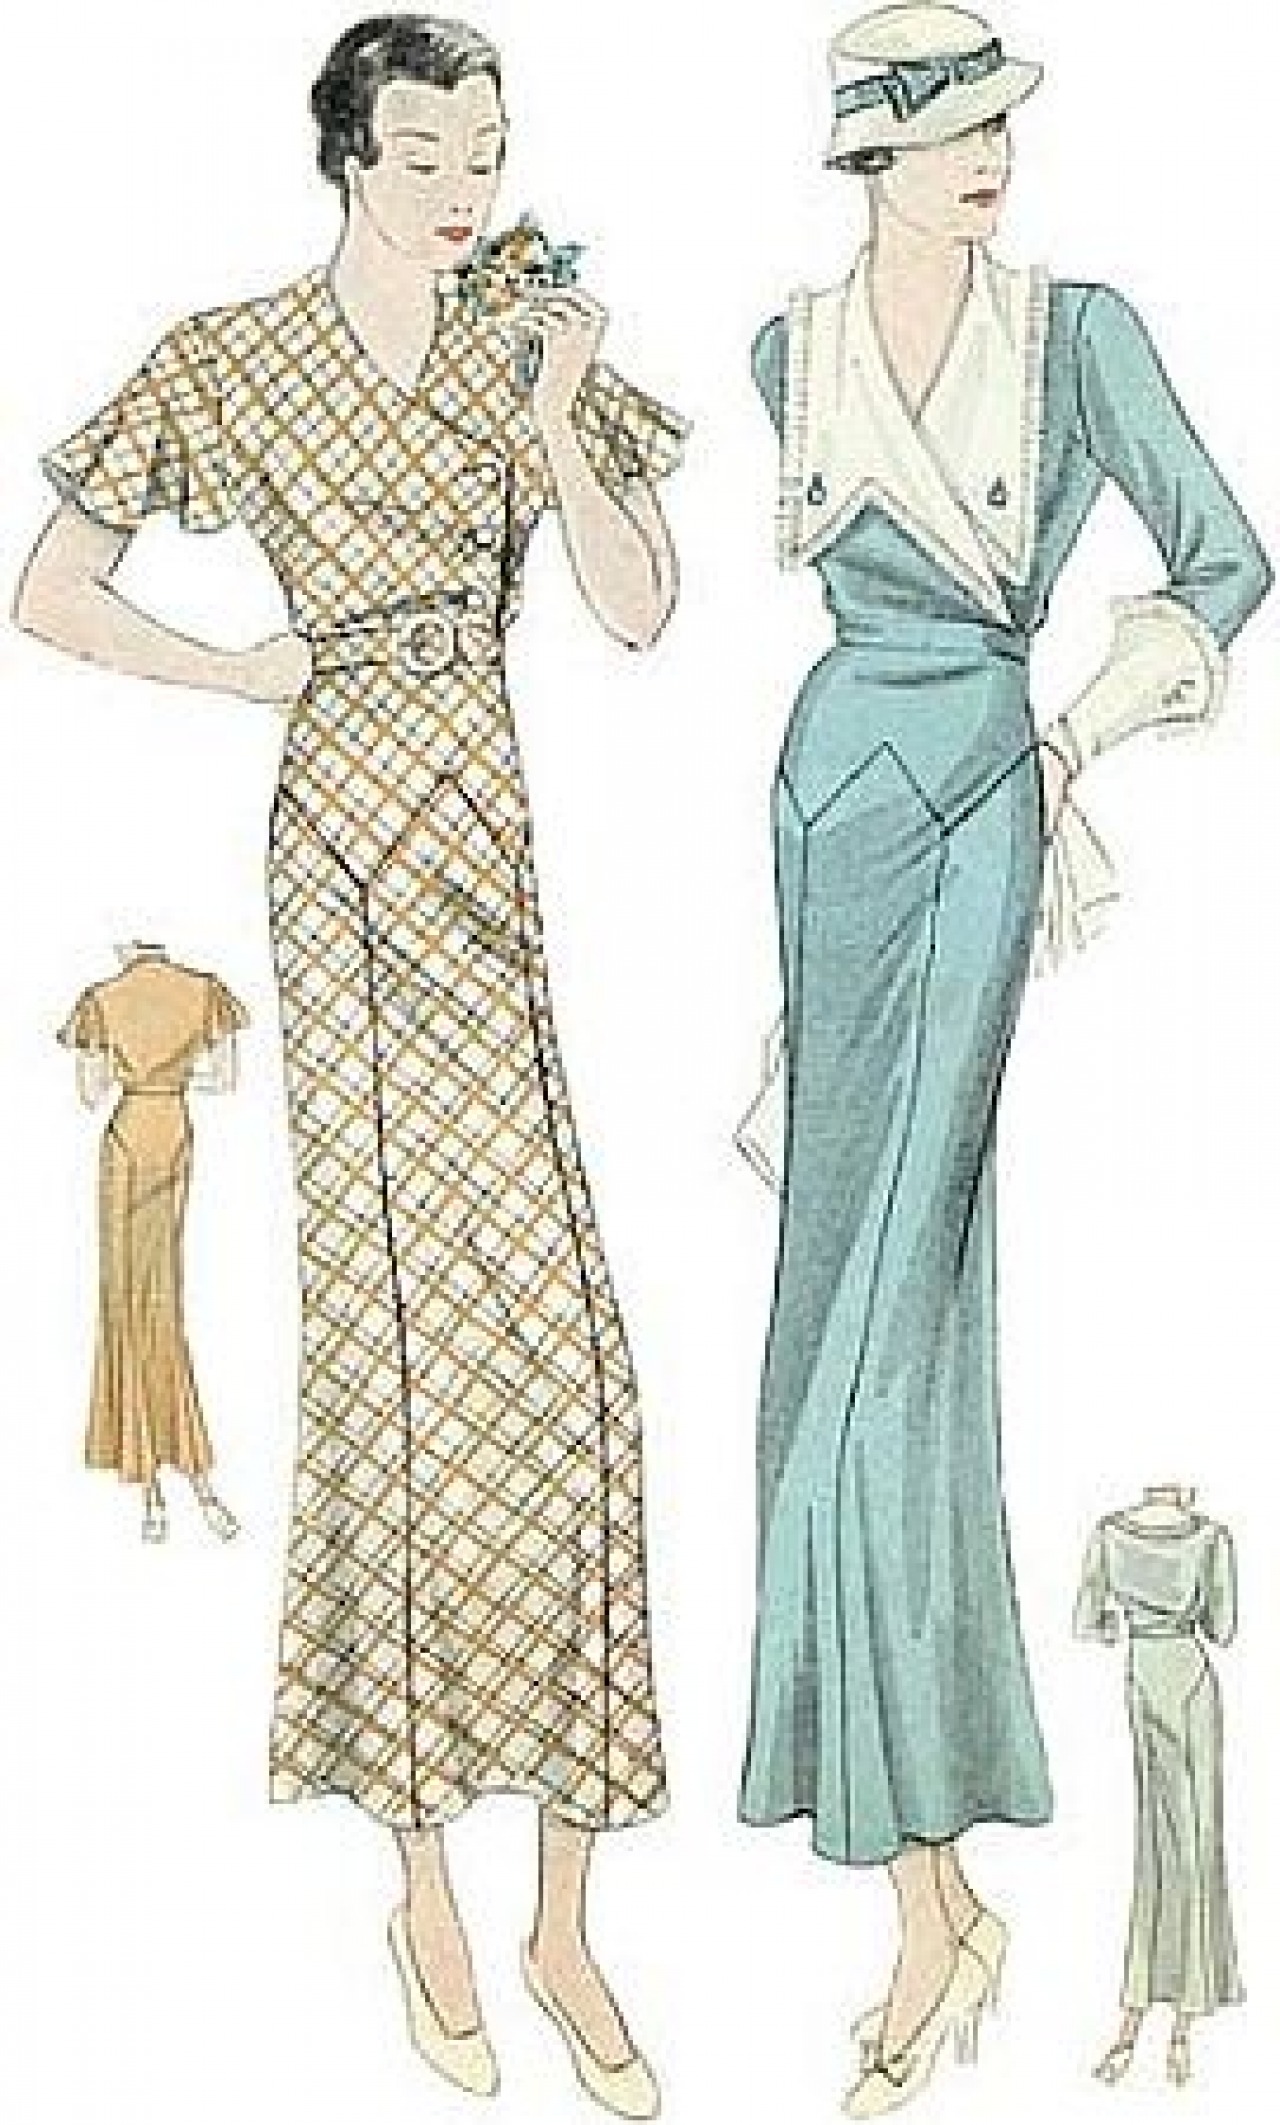 1940s/1950s comparison  Fashion and Decor: A Cultural History